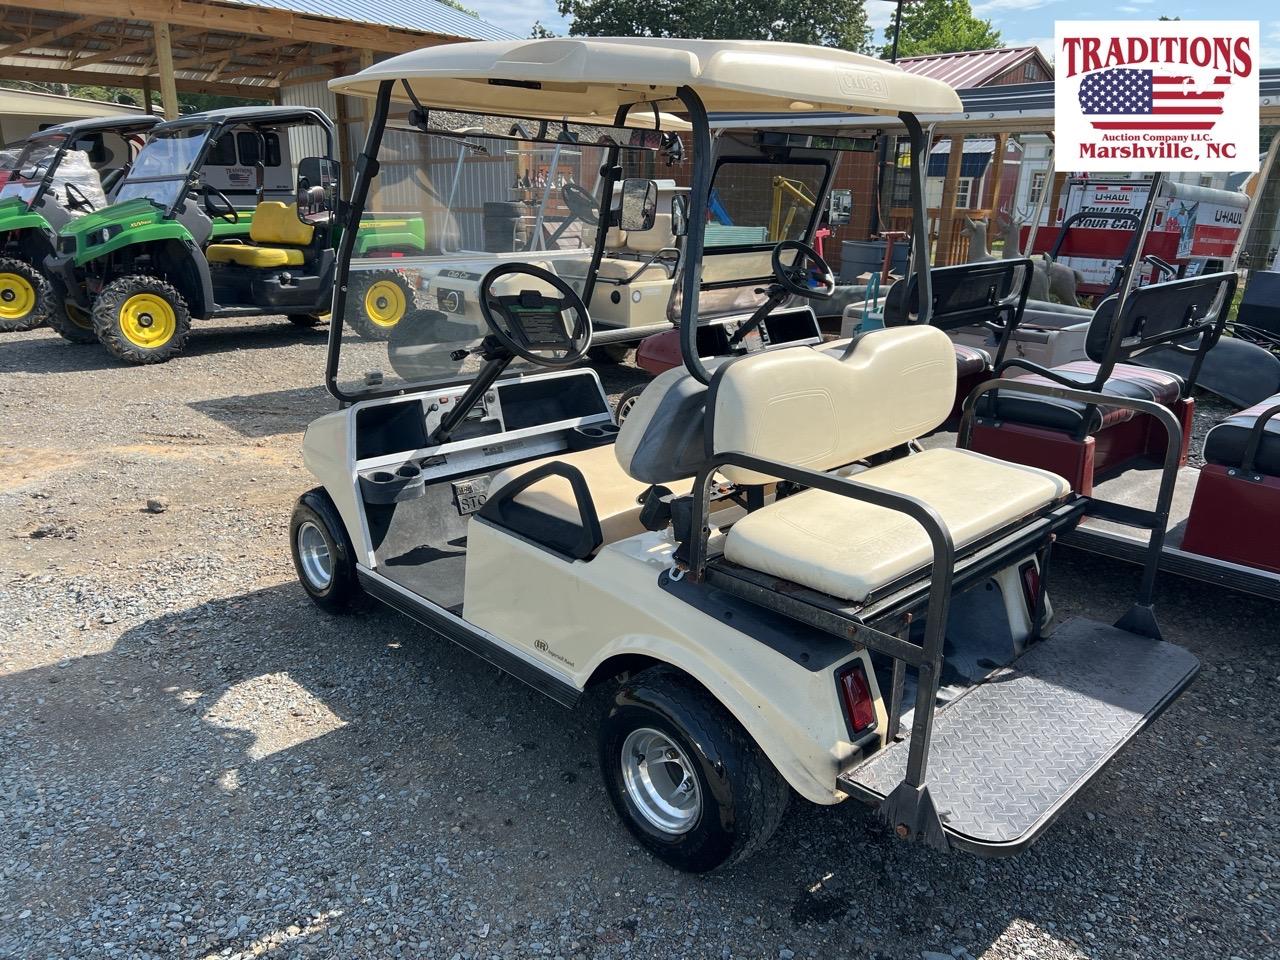 2017 Club Car Golf Cart 48 Volt VIN 5570